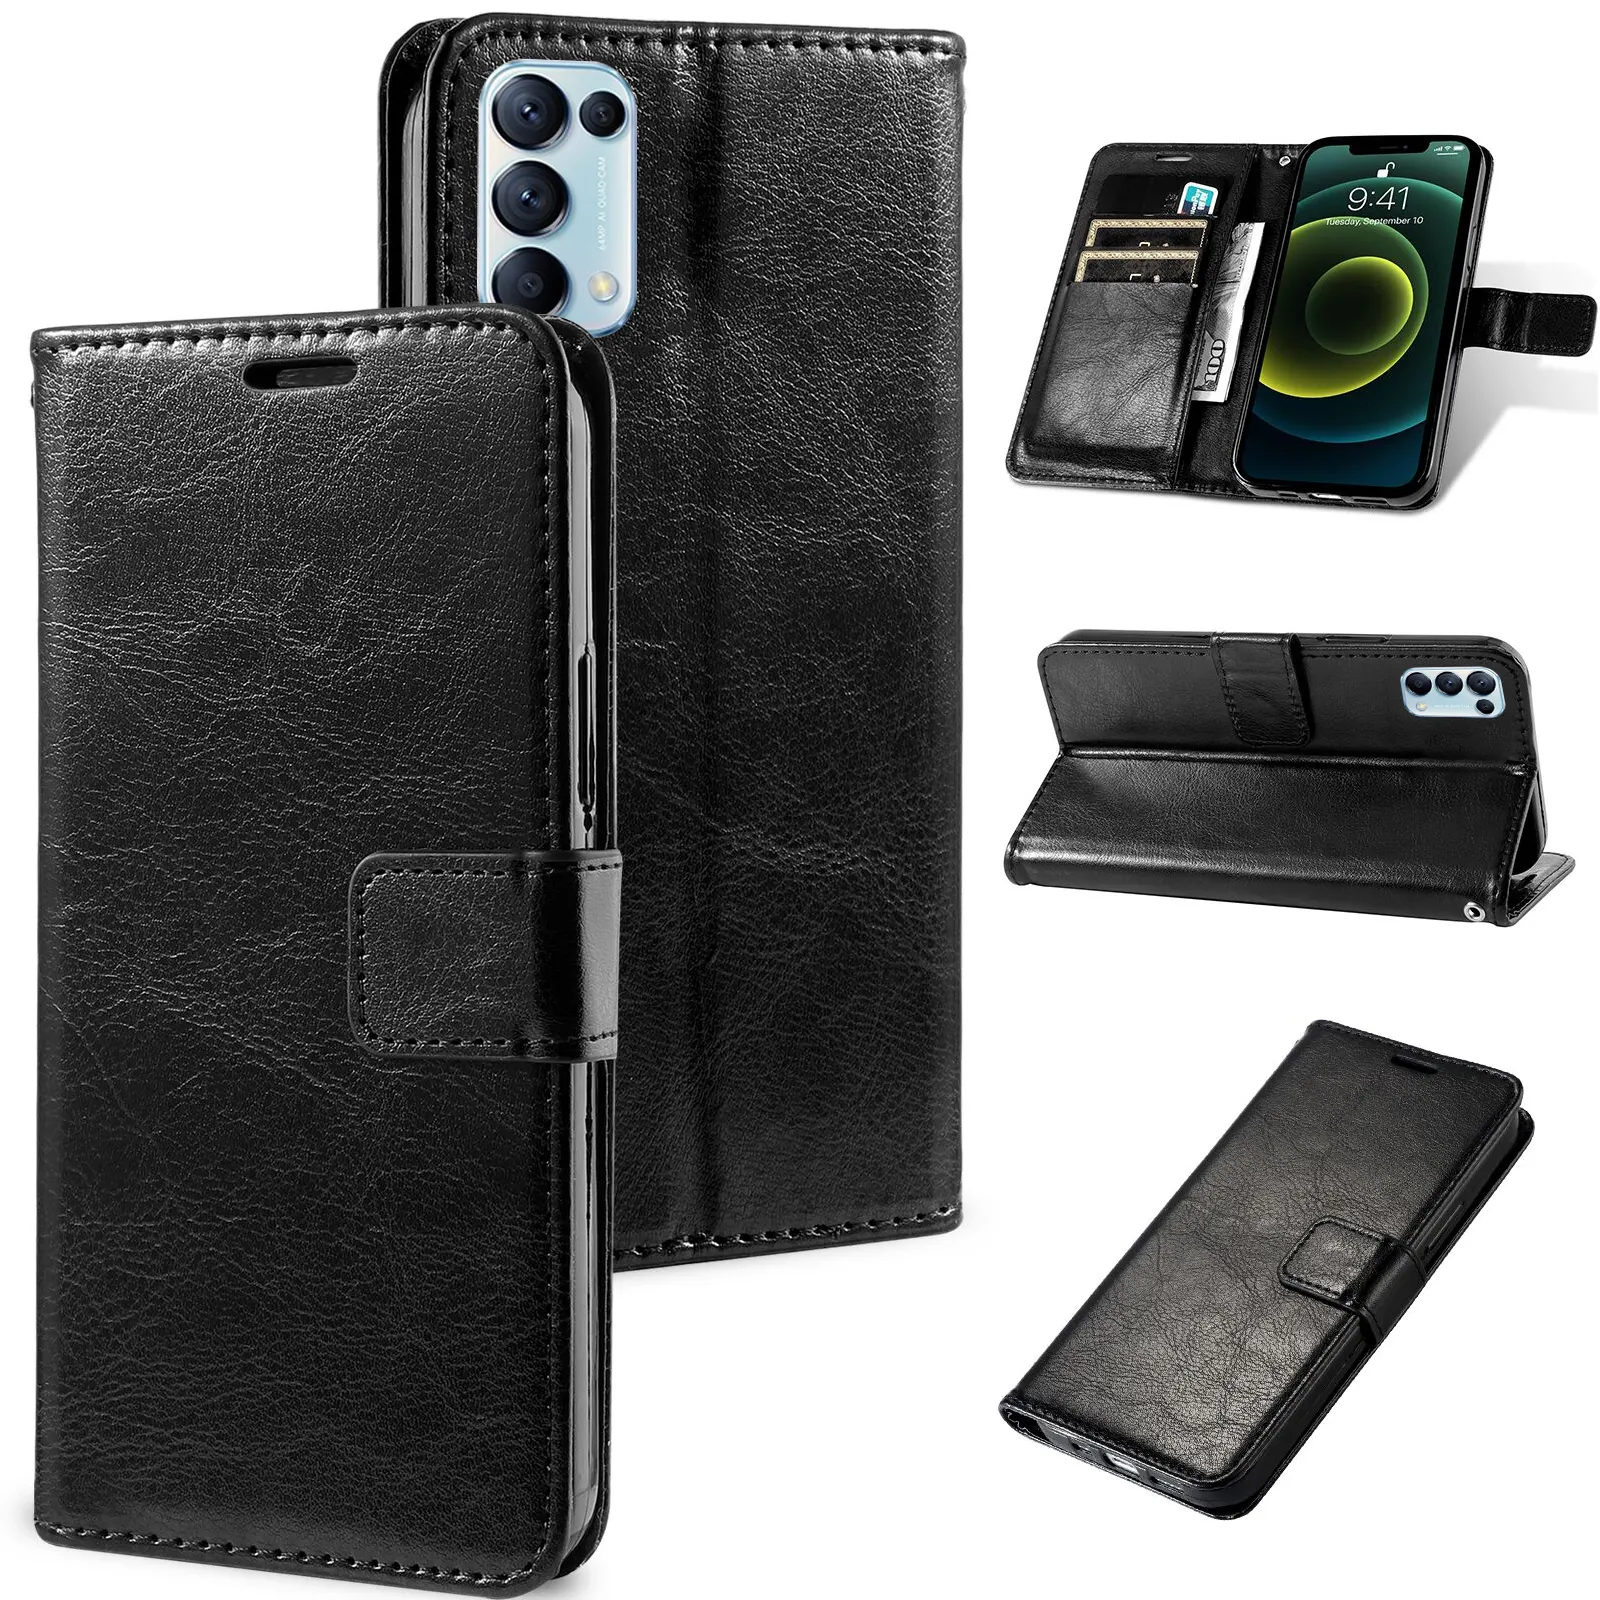 Кожаный Чехол-книжка для телефона с карманами и отделениями для кредитных карт Nokia X5 X6 X7 7 C3 C2 5,3 5,1